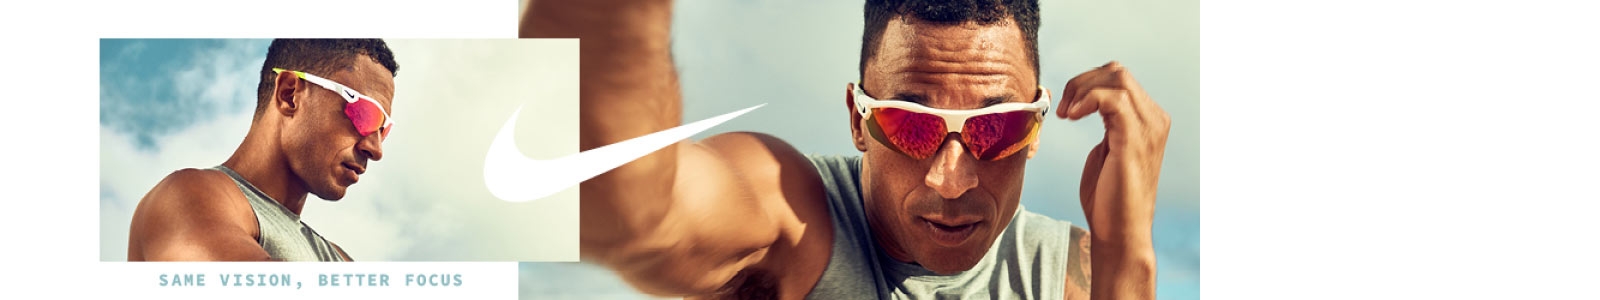 Photo d'un sportif portant des lunettes de soleil Nike adapter pour le sport